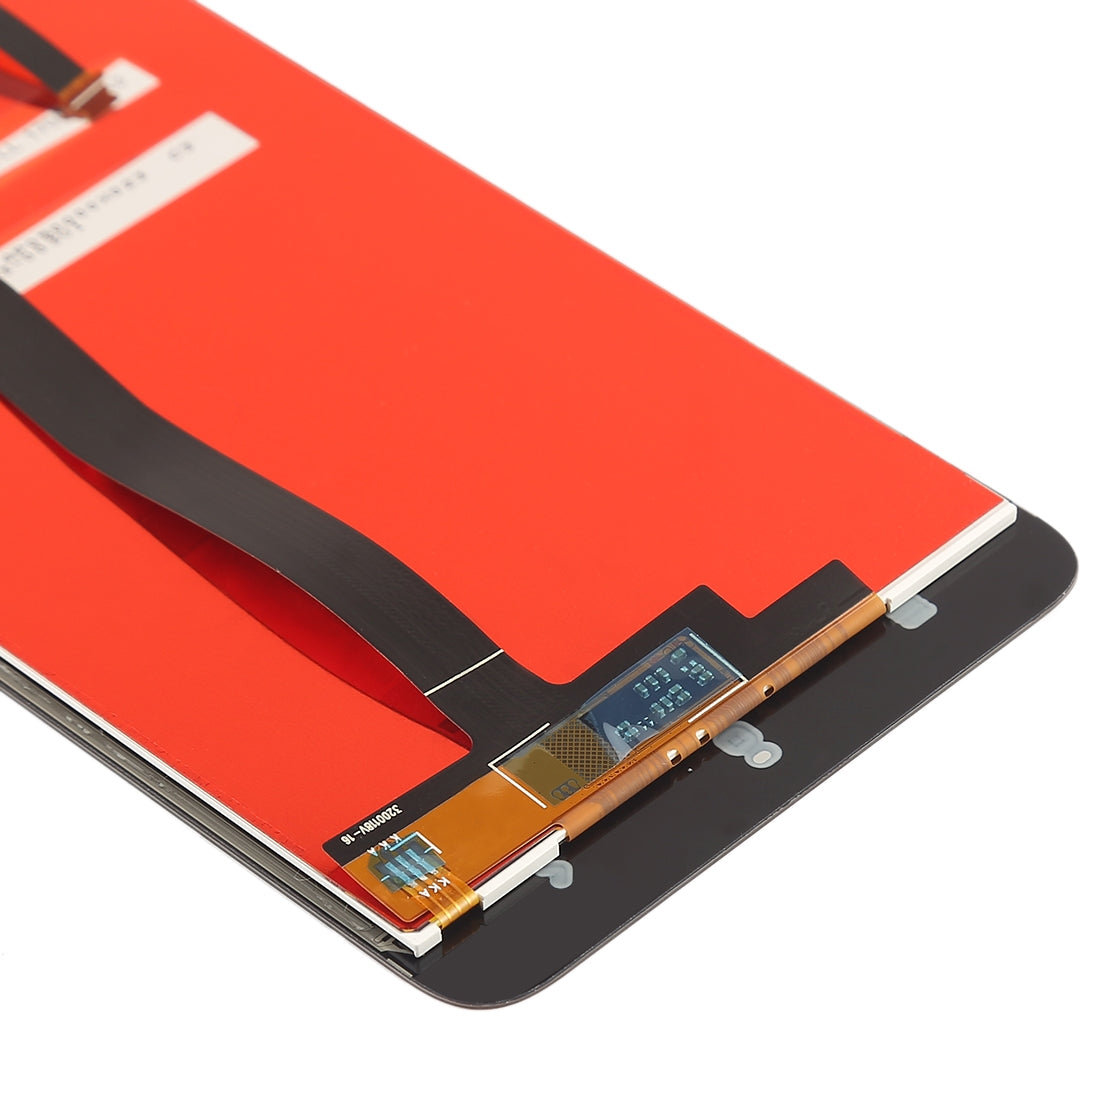 Ecran LCD + Numériseur Tactile Xiaomi Redmi 4A Or